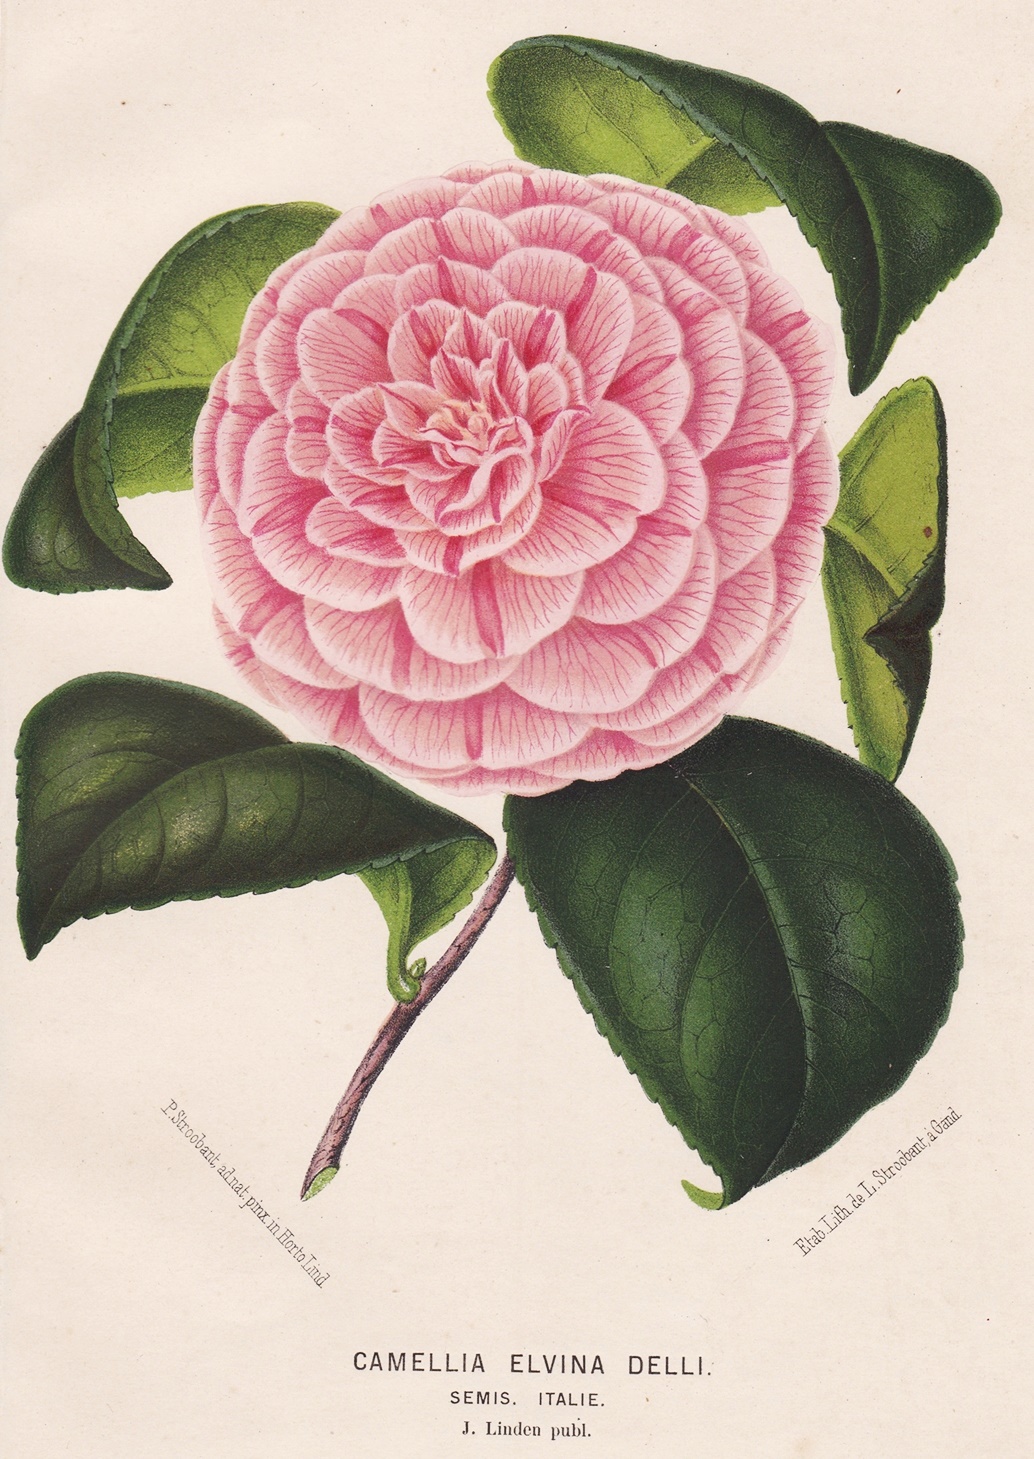 Camellia Elvina Delli